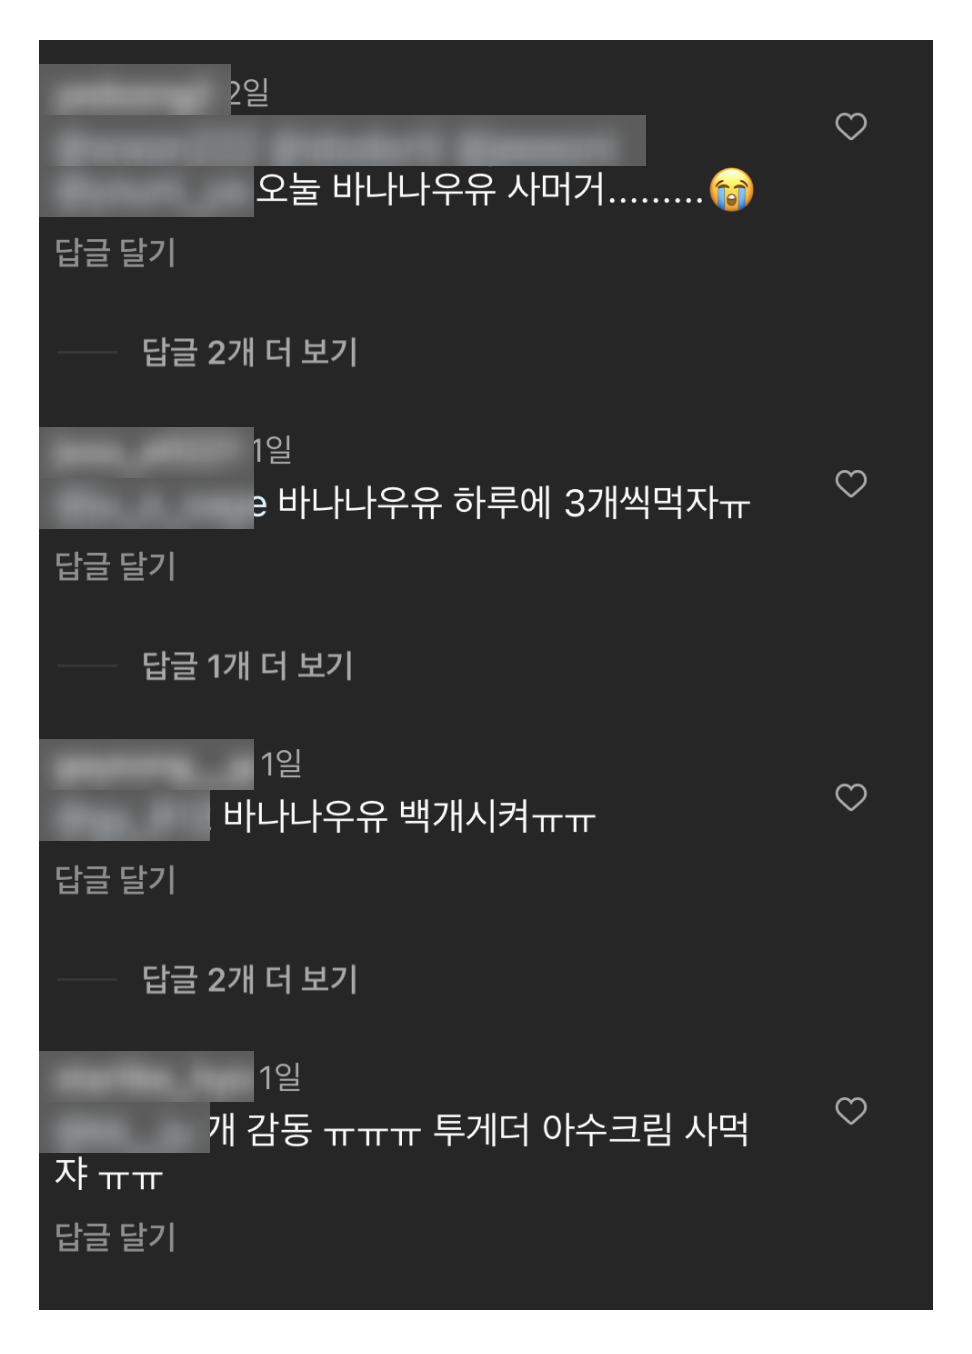 졸업식 영상 인스타그램 댓글 반응